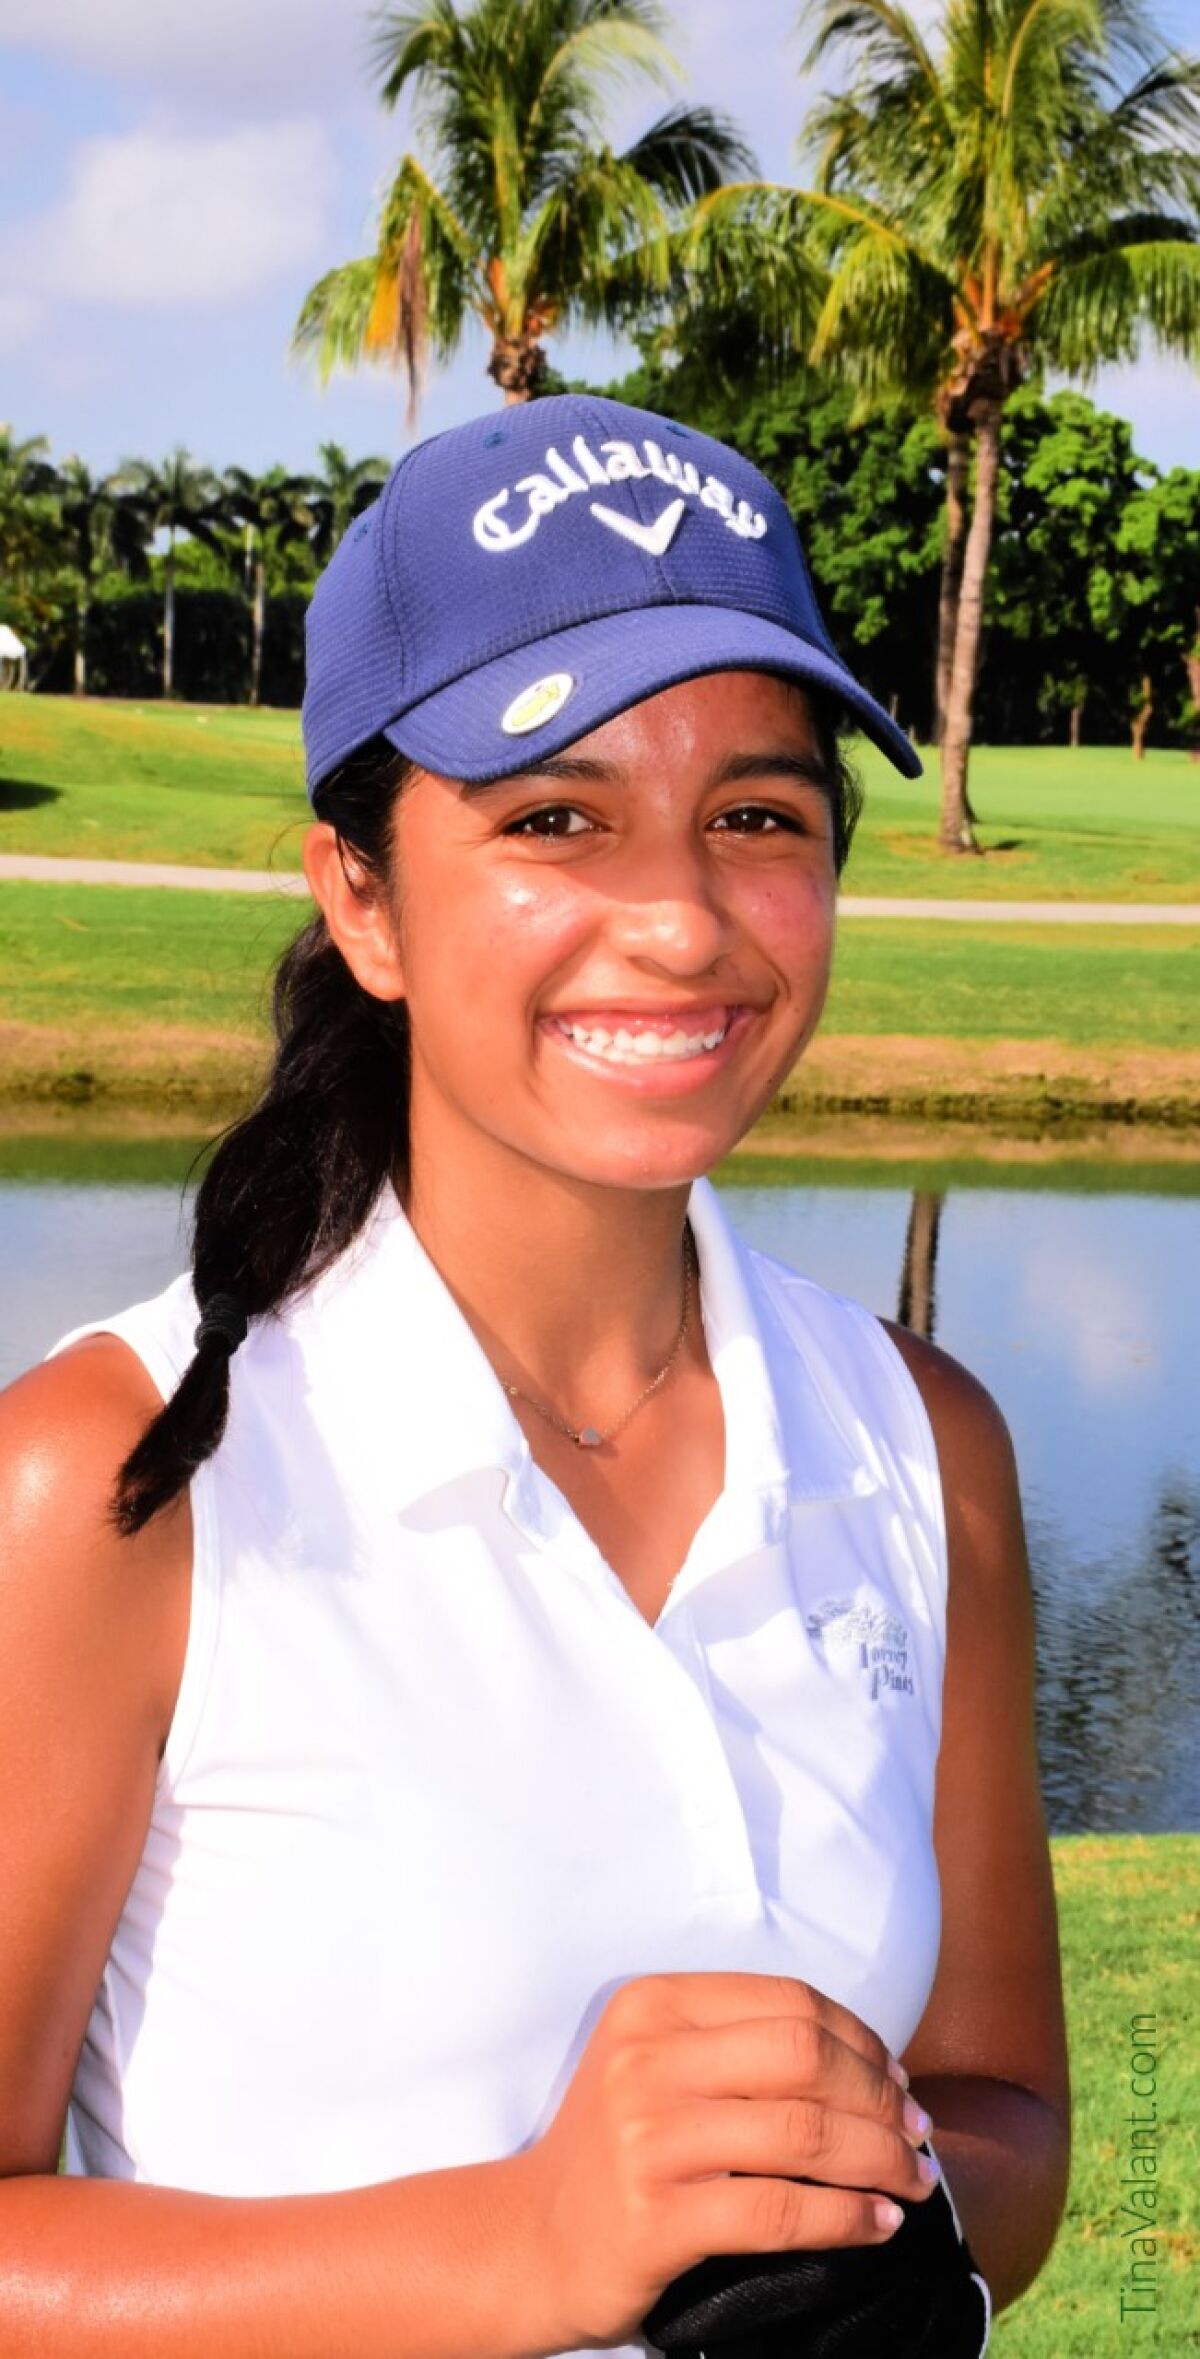 Alexis Faieta of Tujunga won the Optimist International Junior Golf championship for 13-14 division in Florida.